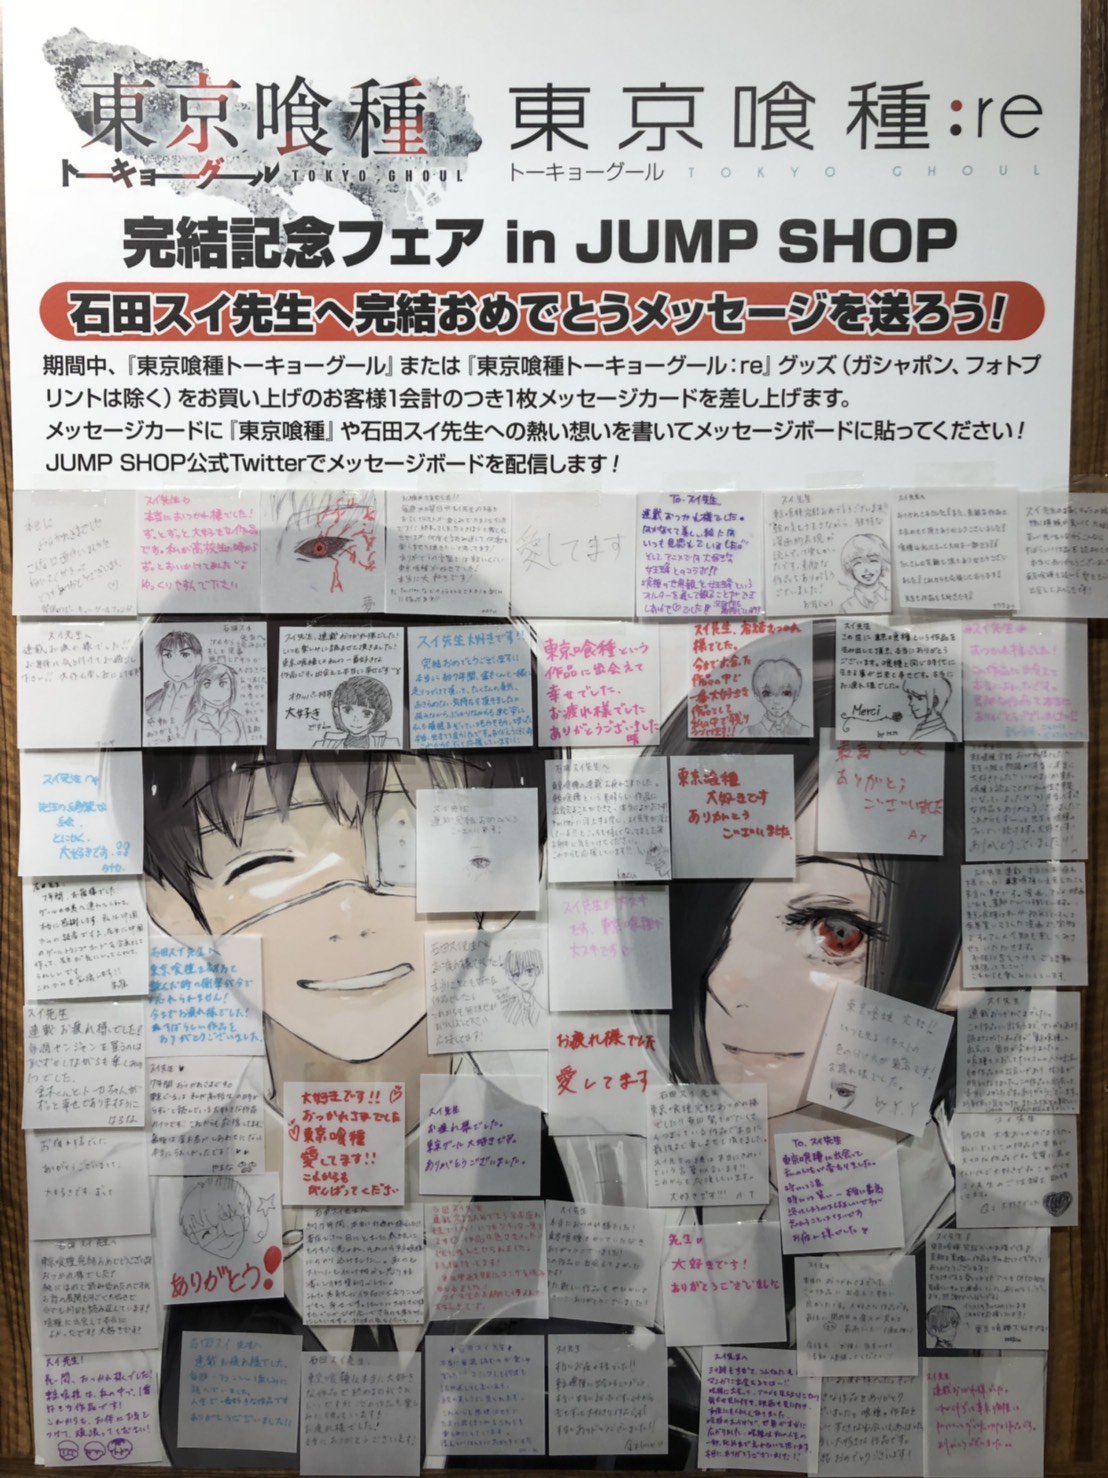 ジャンプショップ Jump Shop 公式 東京喰種 トーキョーグール Re フェア開催中 石田スイ先生へ完結おめでとうメッセージを送ろう 写真は Jump Shop東京ドームシティ店のメッセージボードです 多くのメッセージをありがとうございます